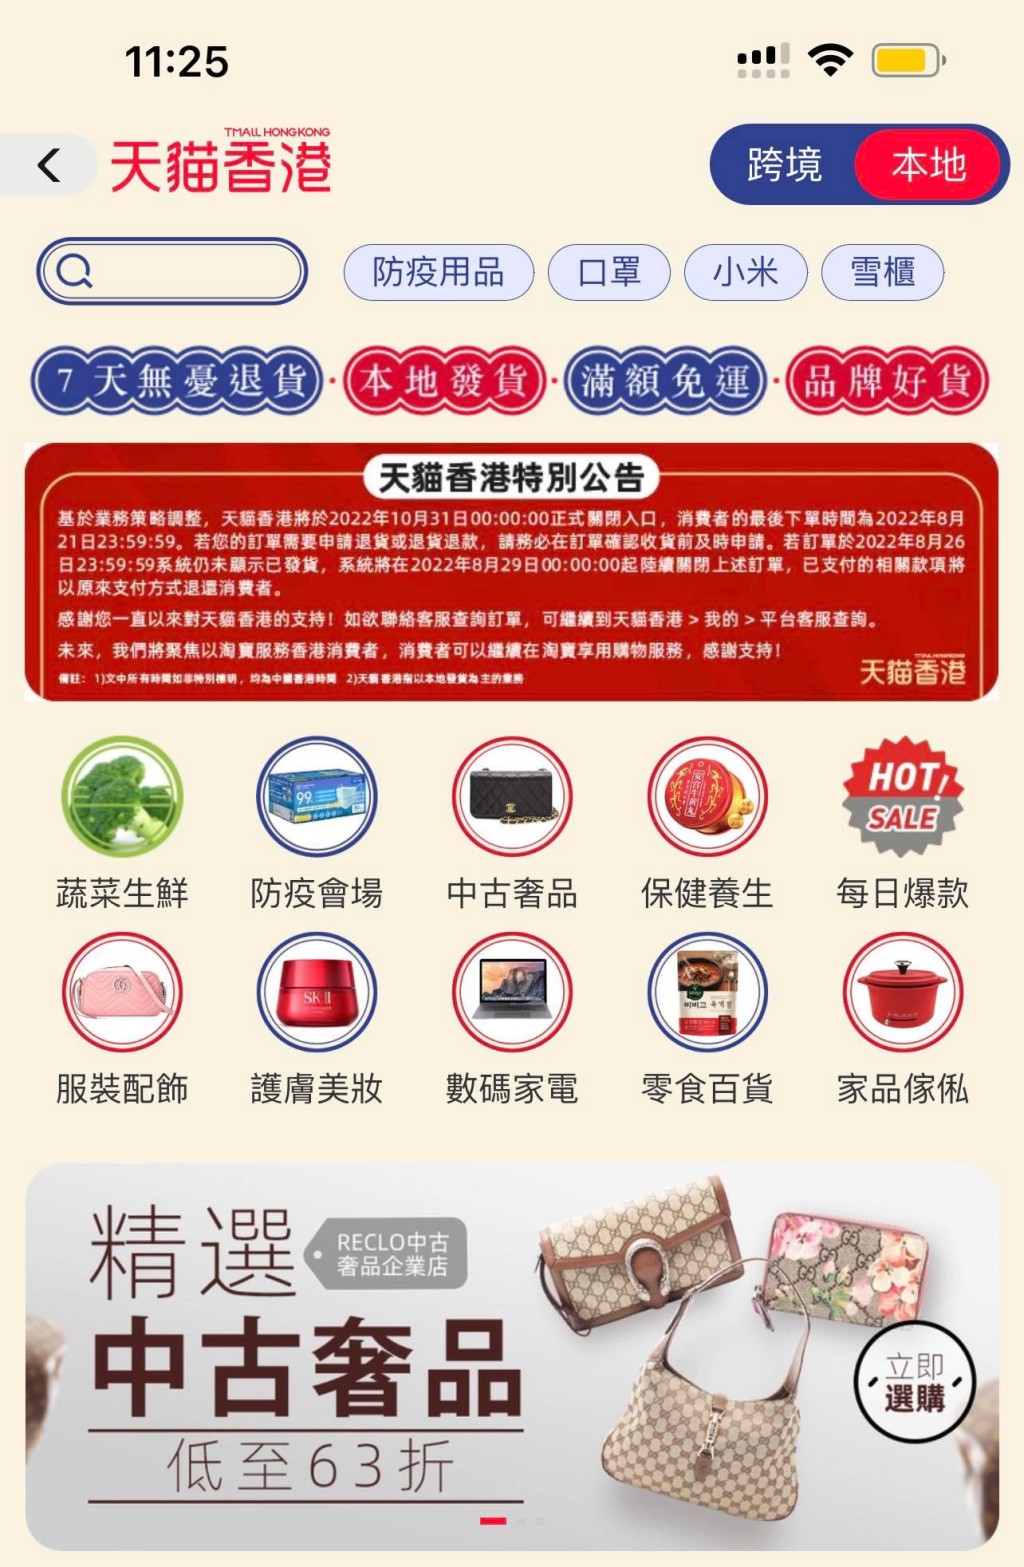 「天貓香港」在手機應用程式內亦貼出公告。APP截圖